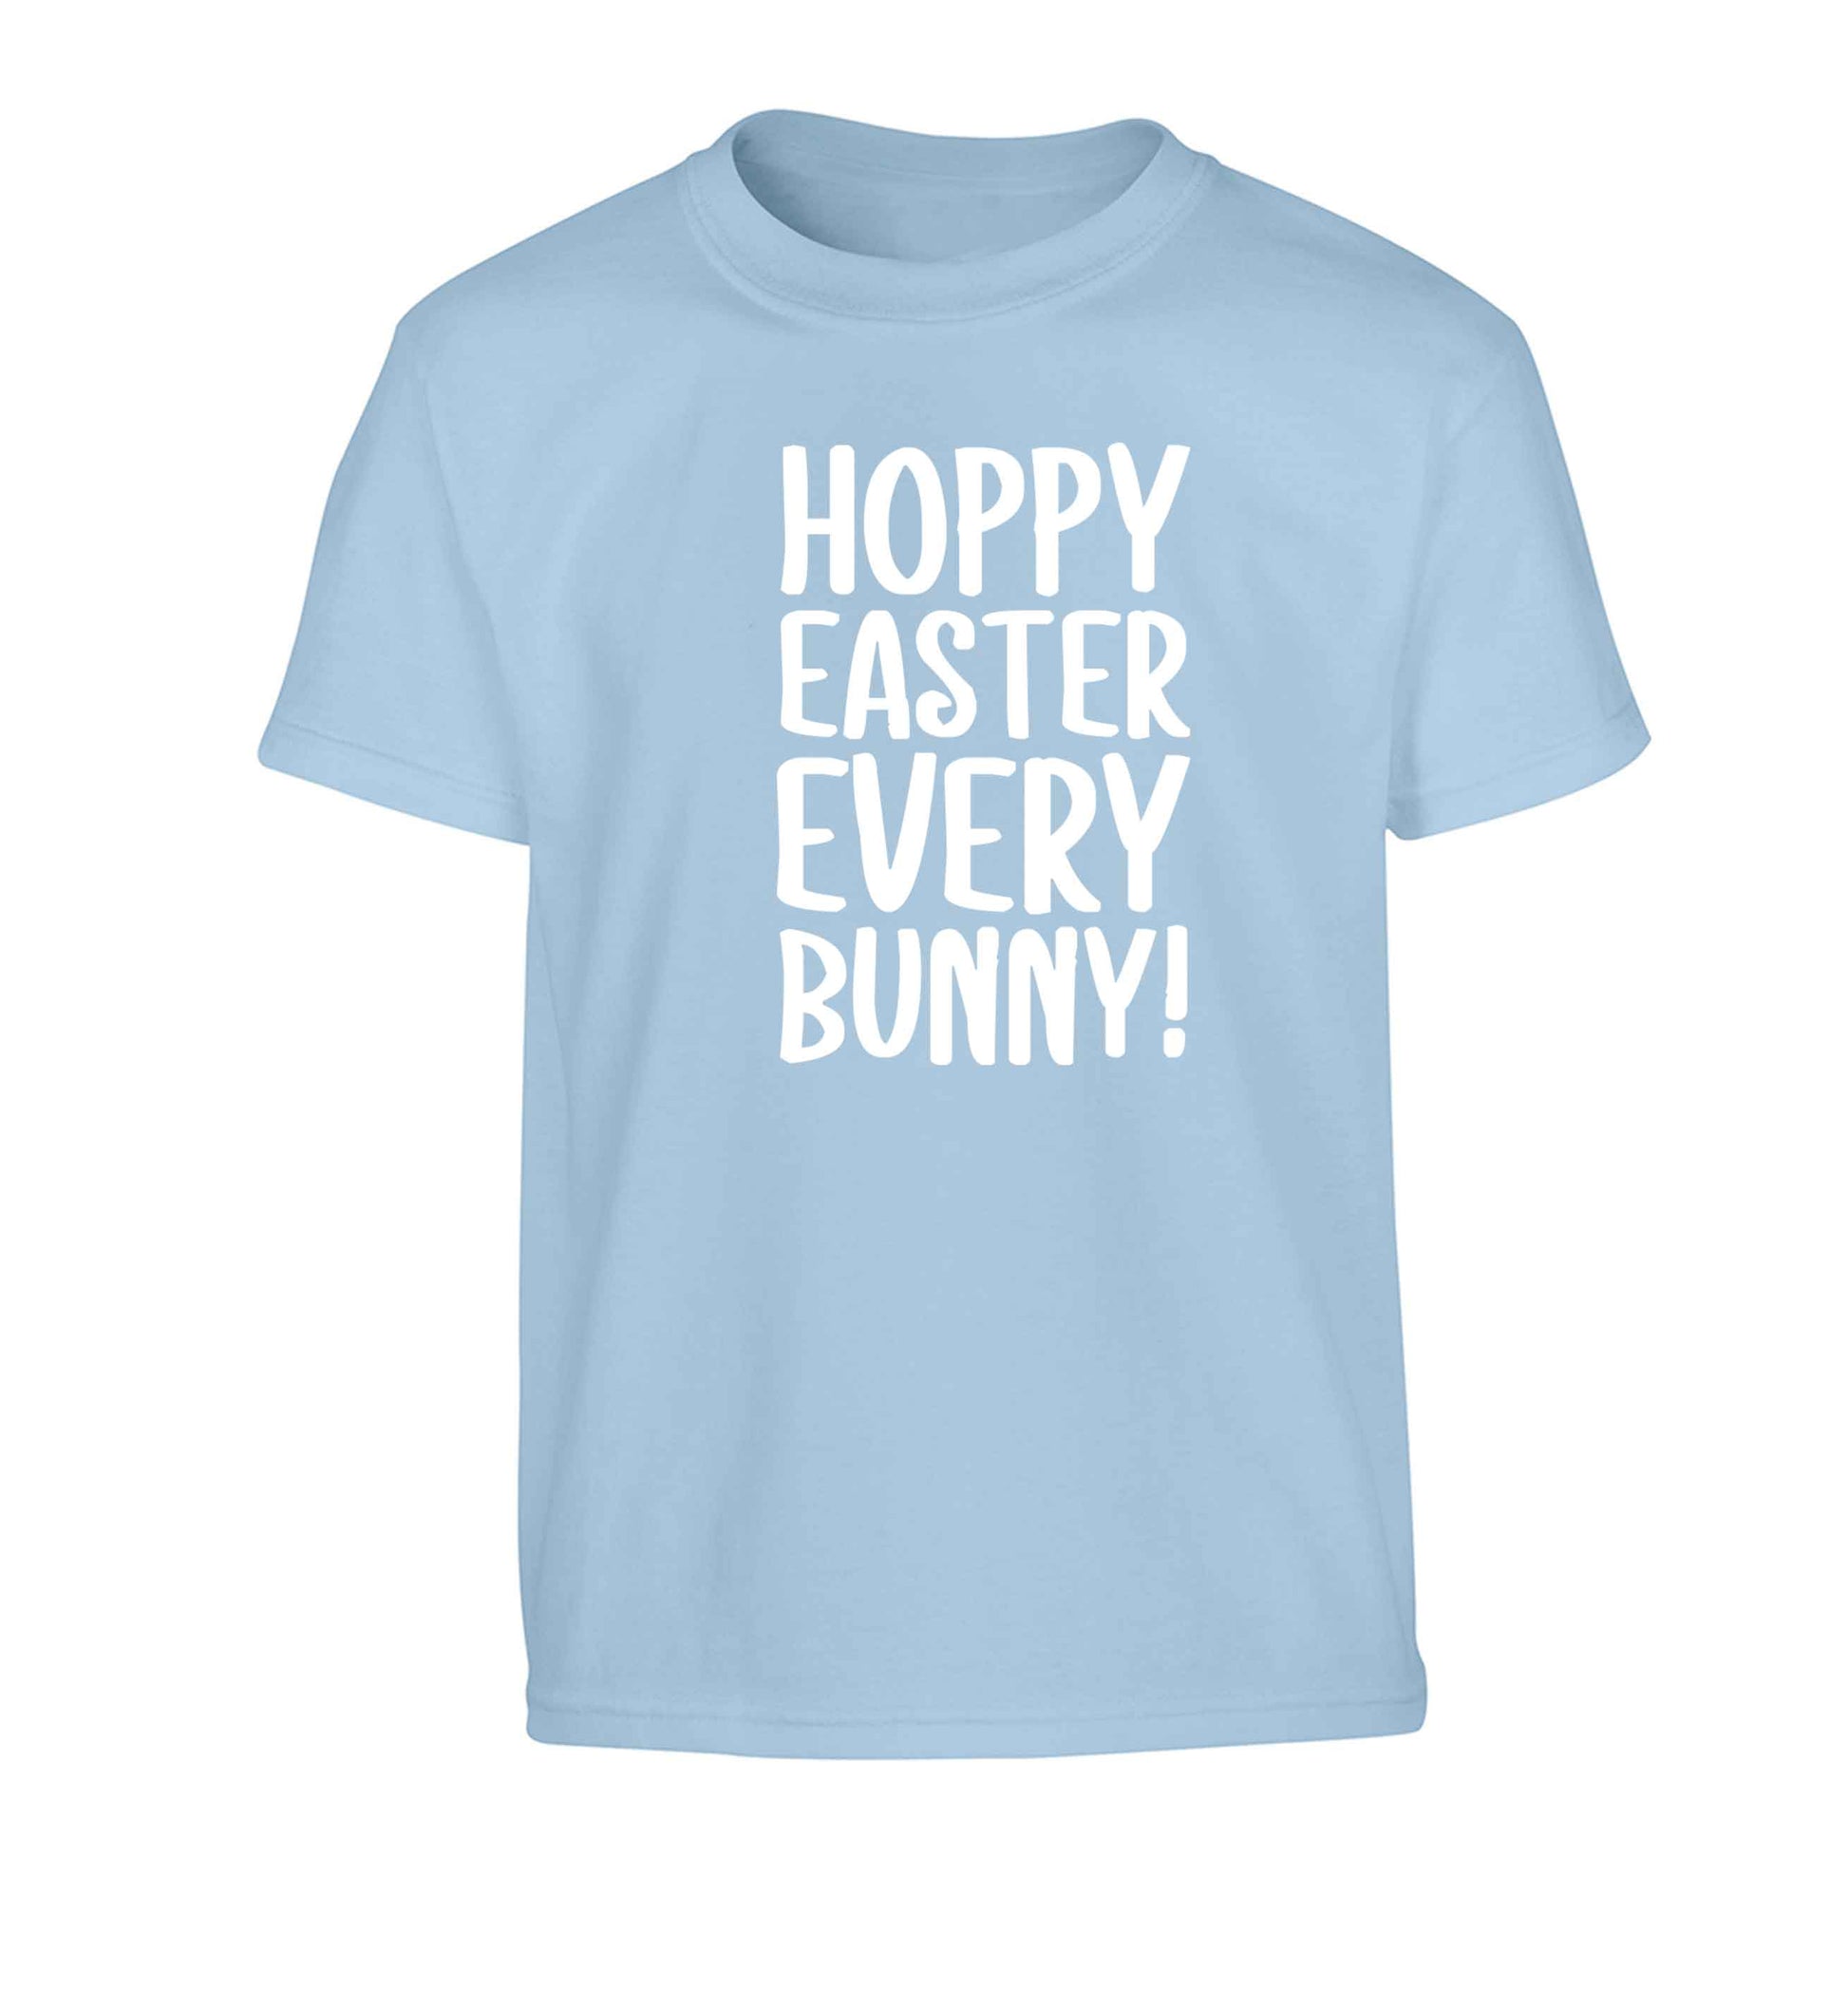 Hoppy Easter every bunny! Children's light blue Tshirt 12-13 Years